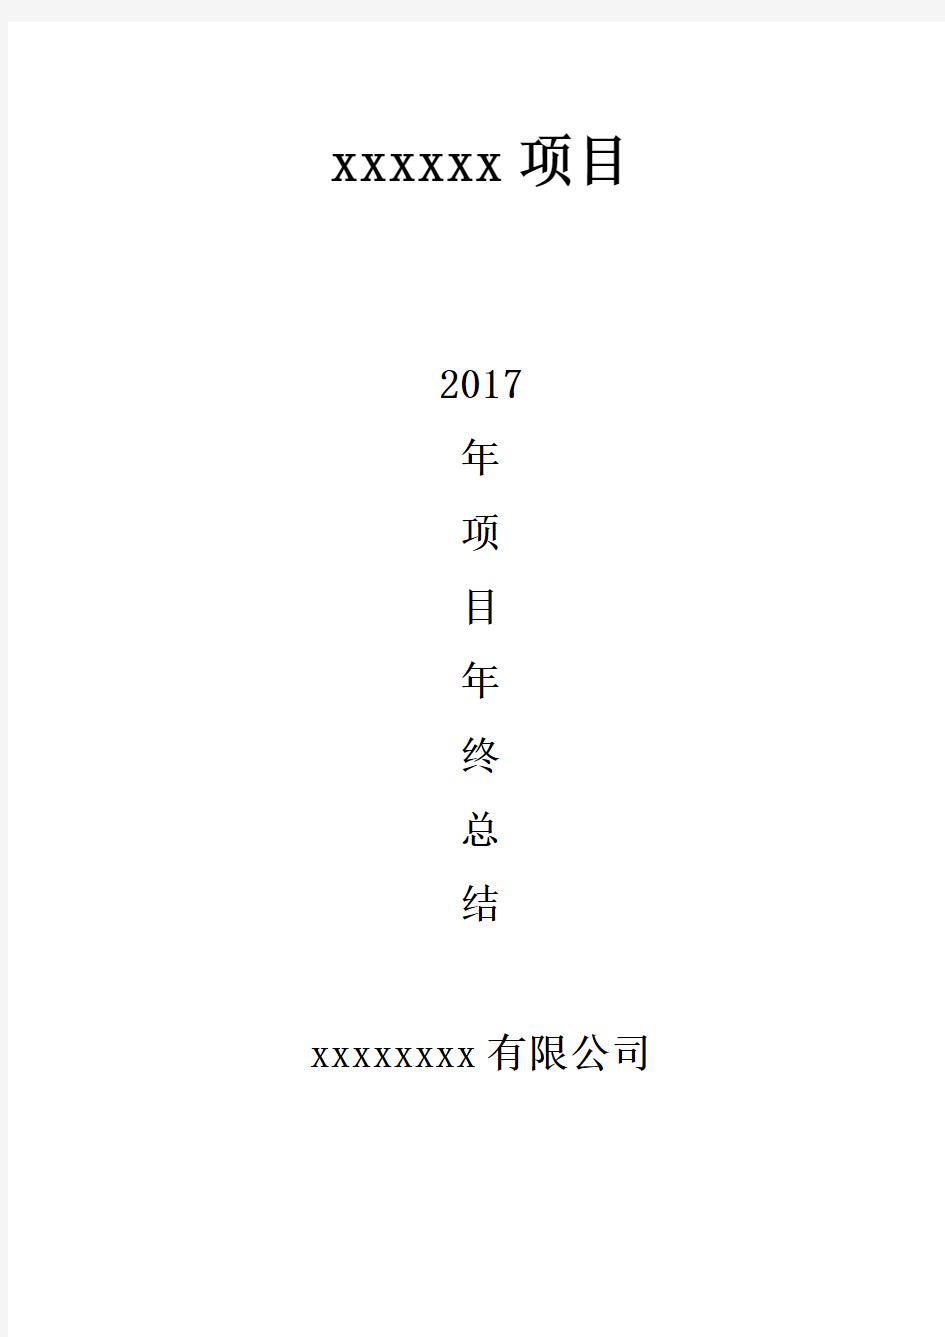 2017年项目部年终总结报告